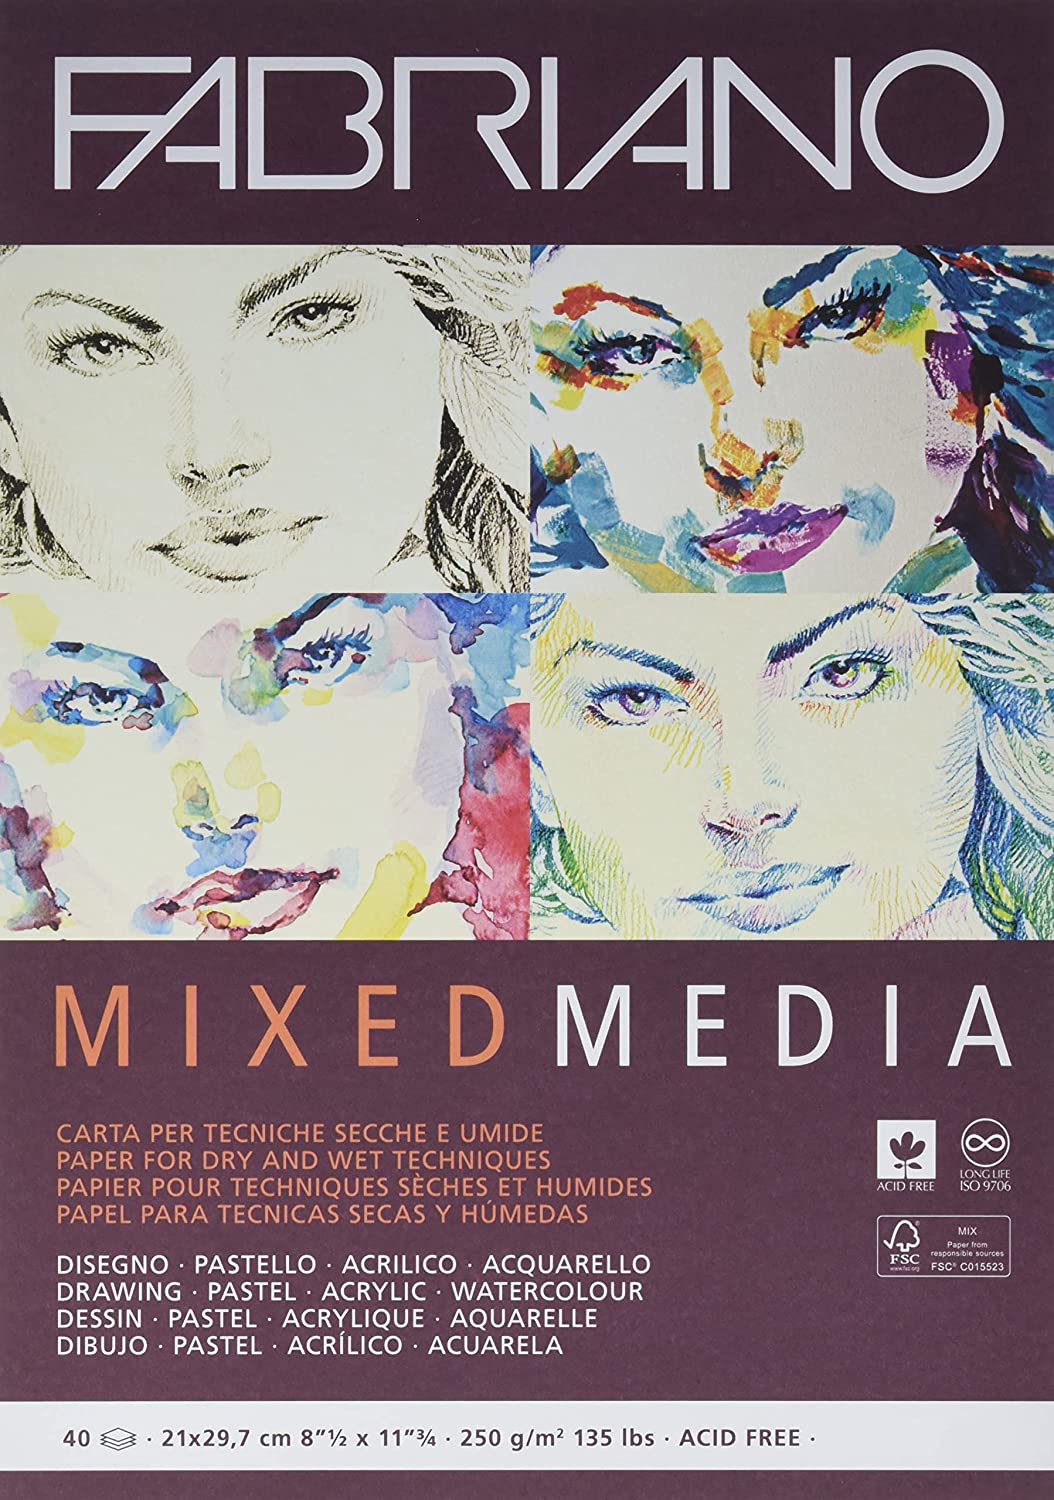 FABRIANO - Mixed Media Pads (Libreta con Hojas para Medio Mixtos)